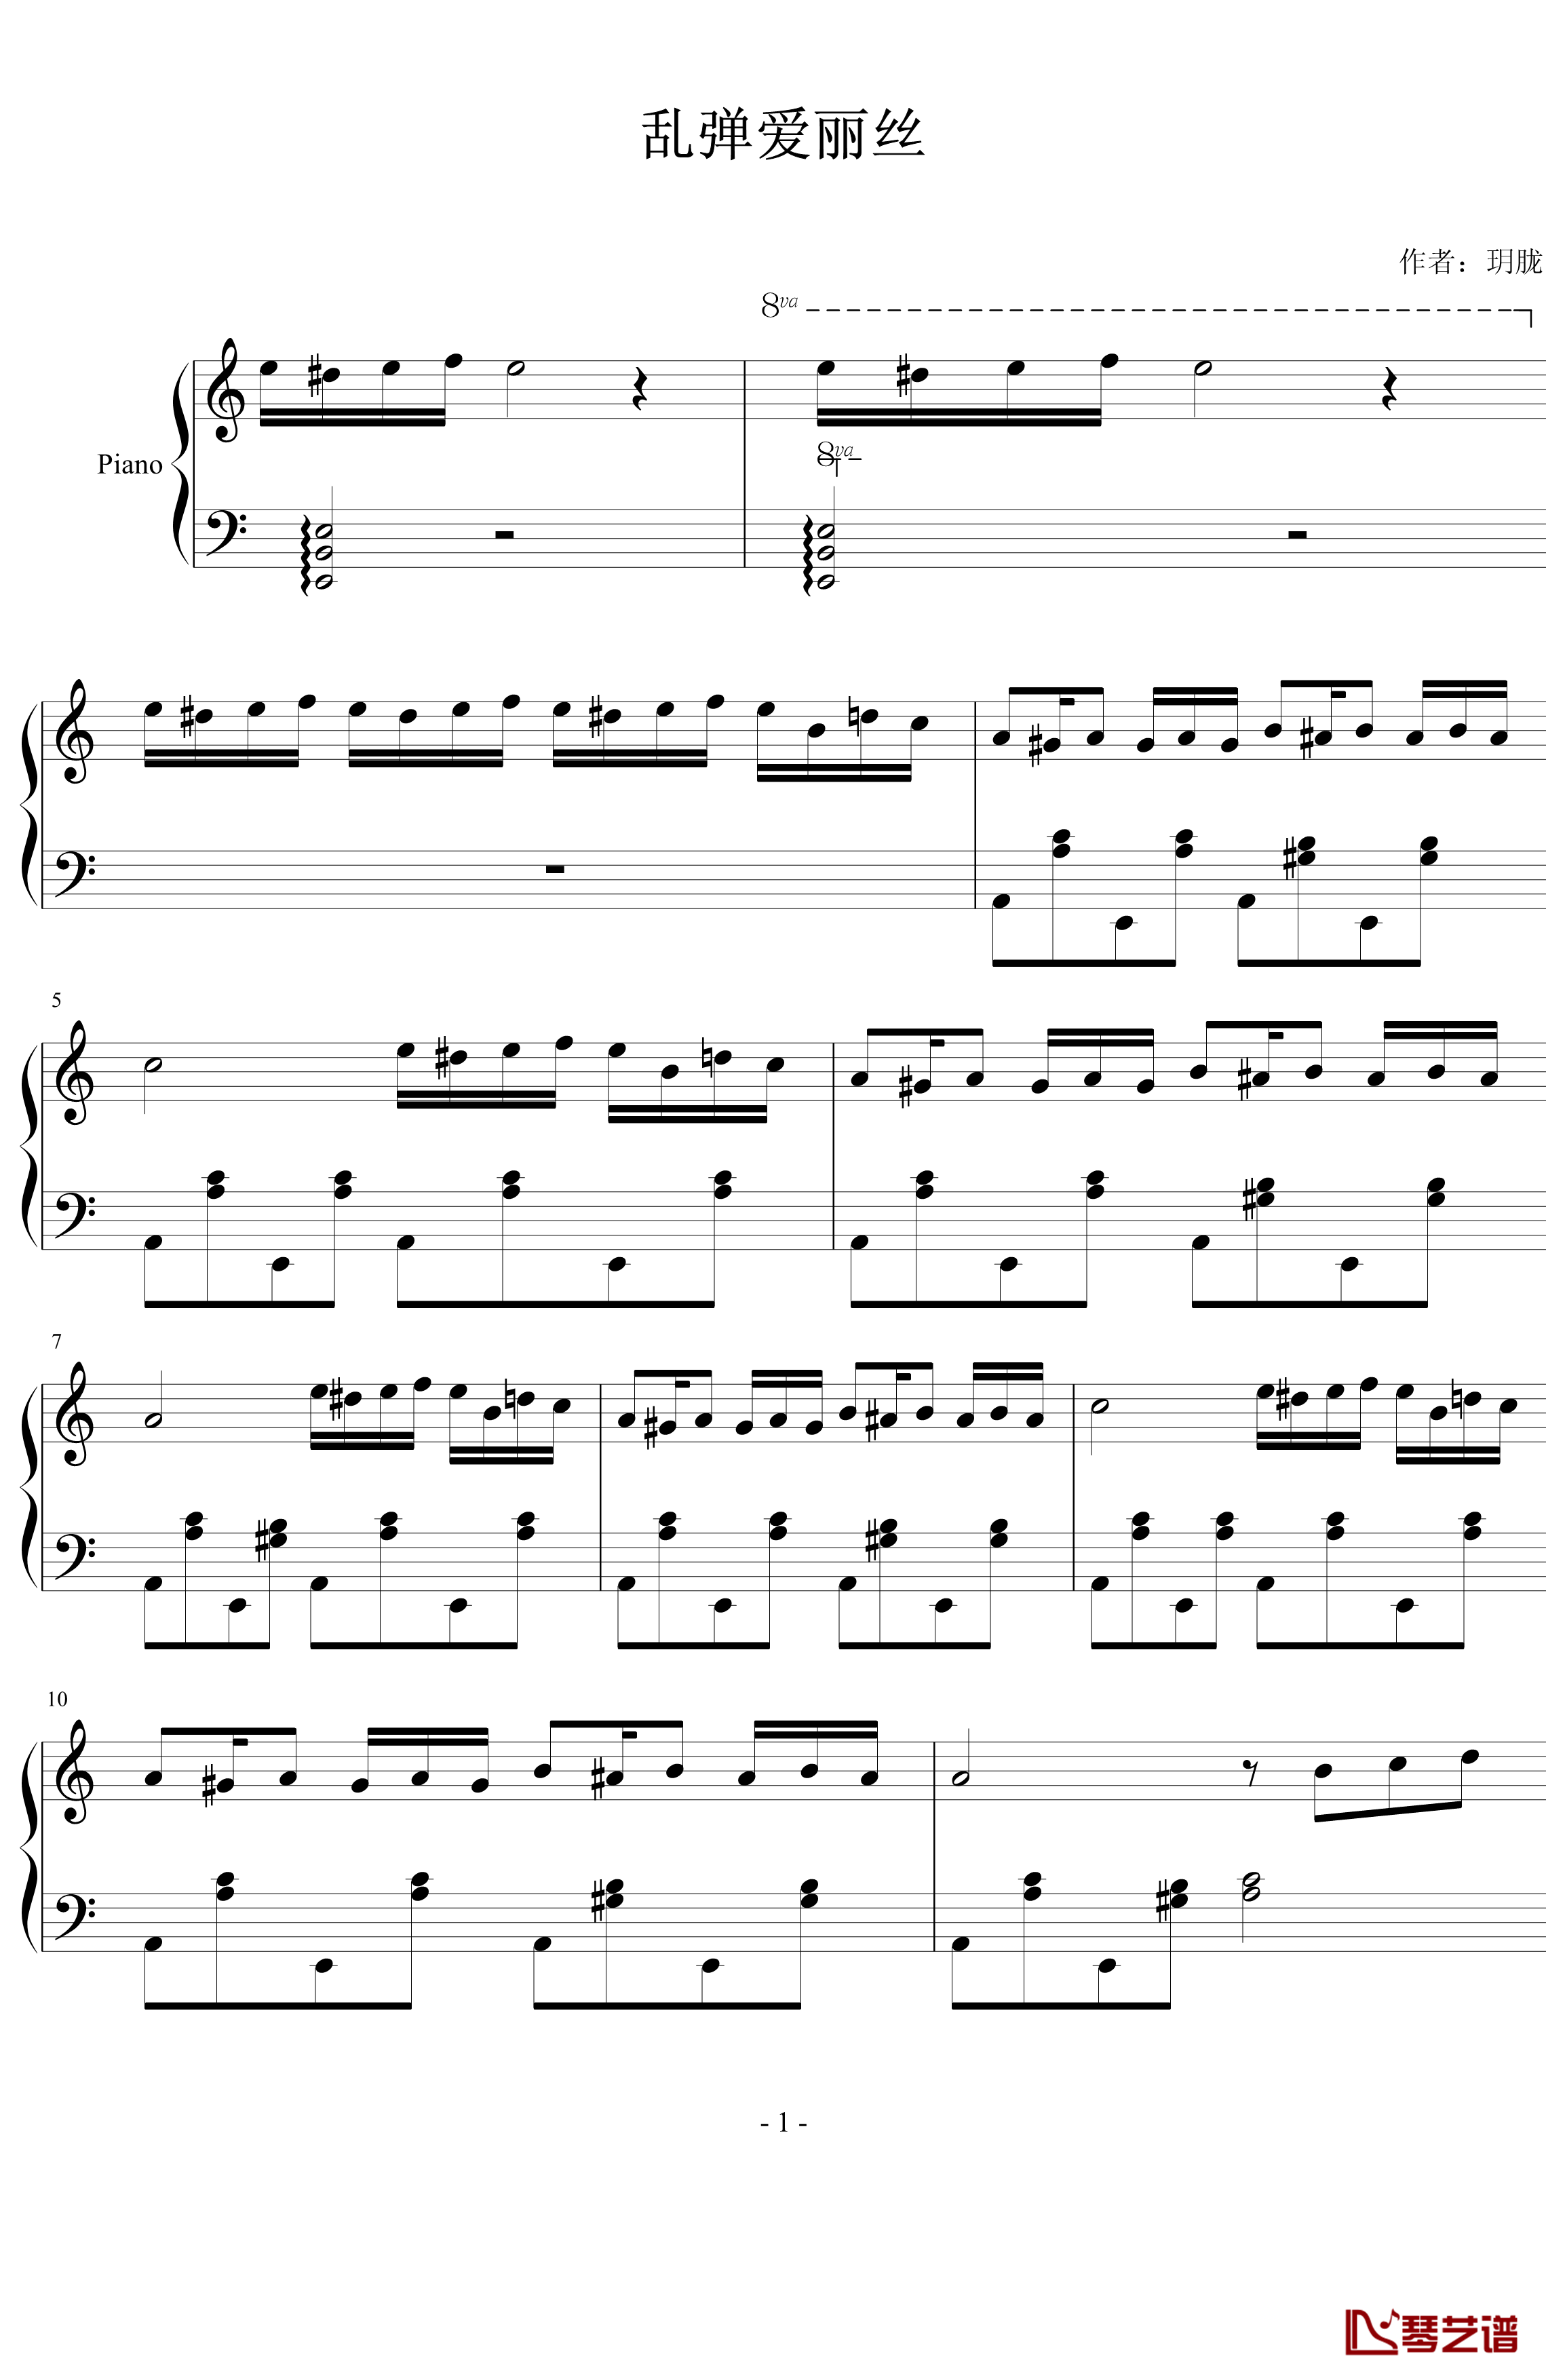 乱弹爱丽丝钢琴谱-贝多芬-beethoven1